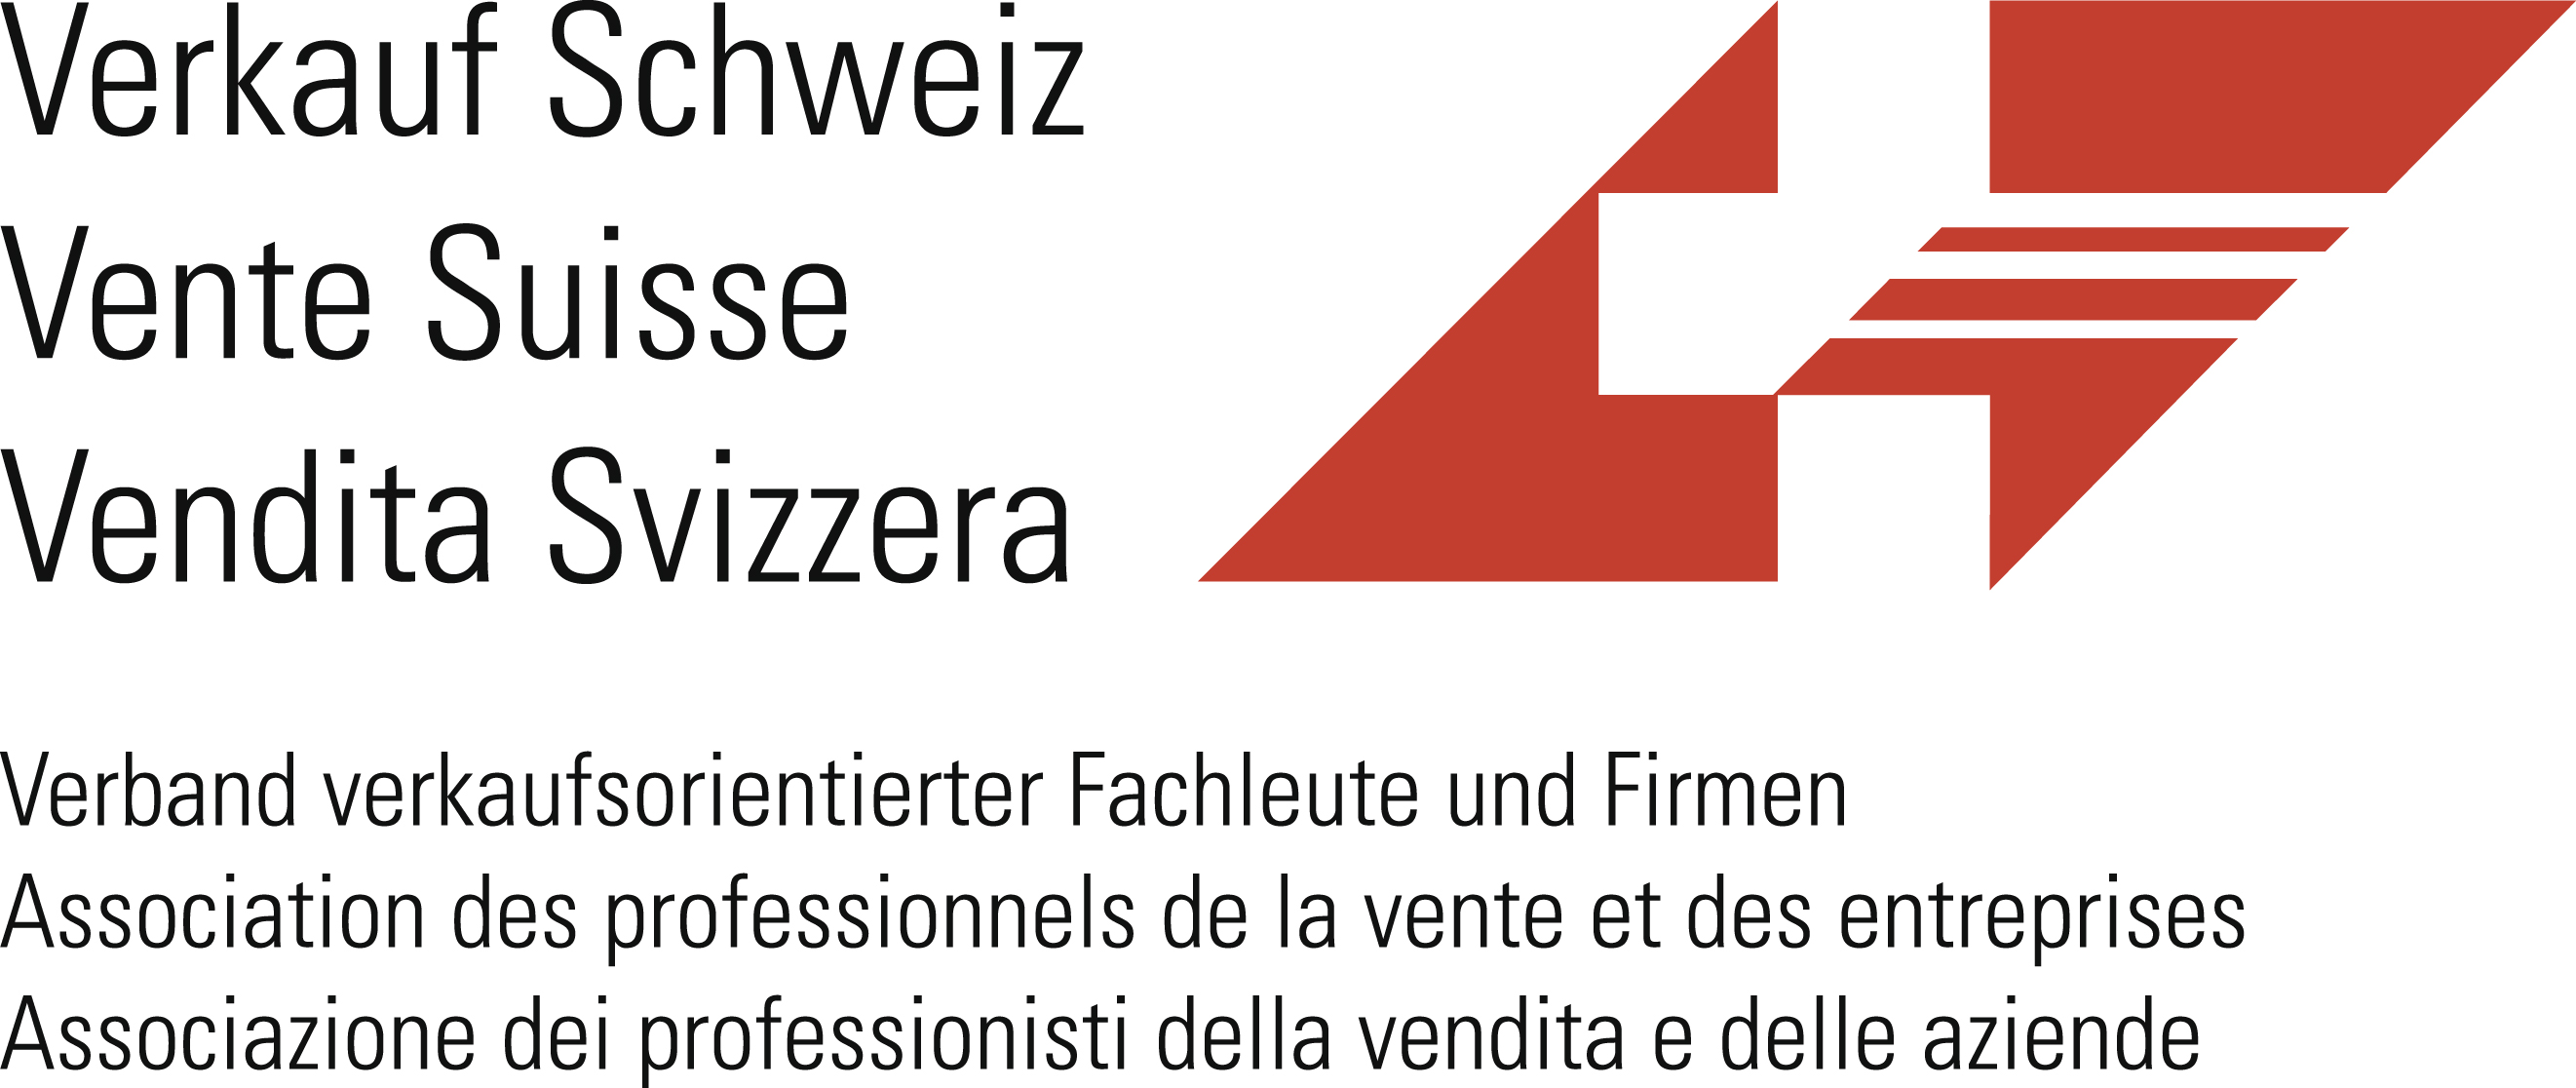 Logo Verkauf Schweiz